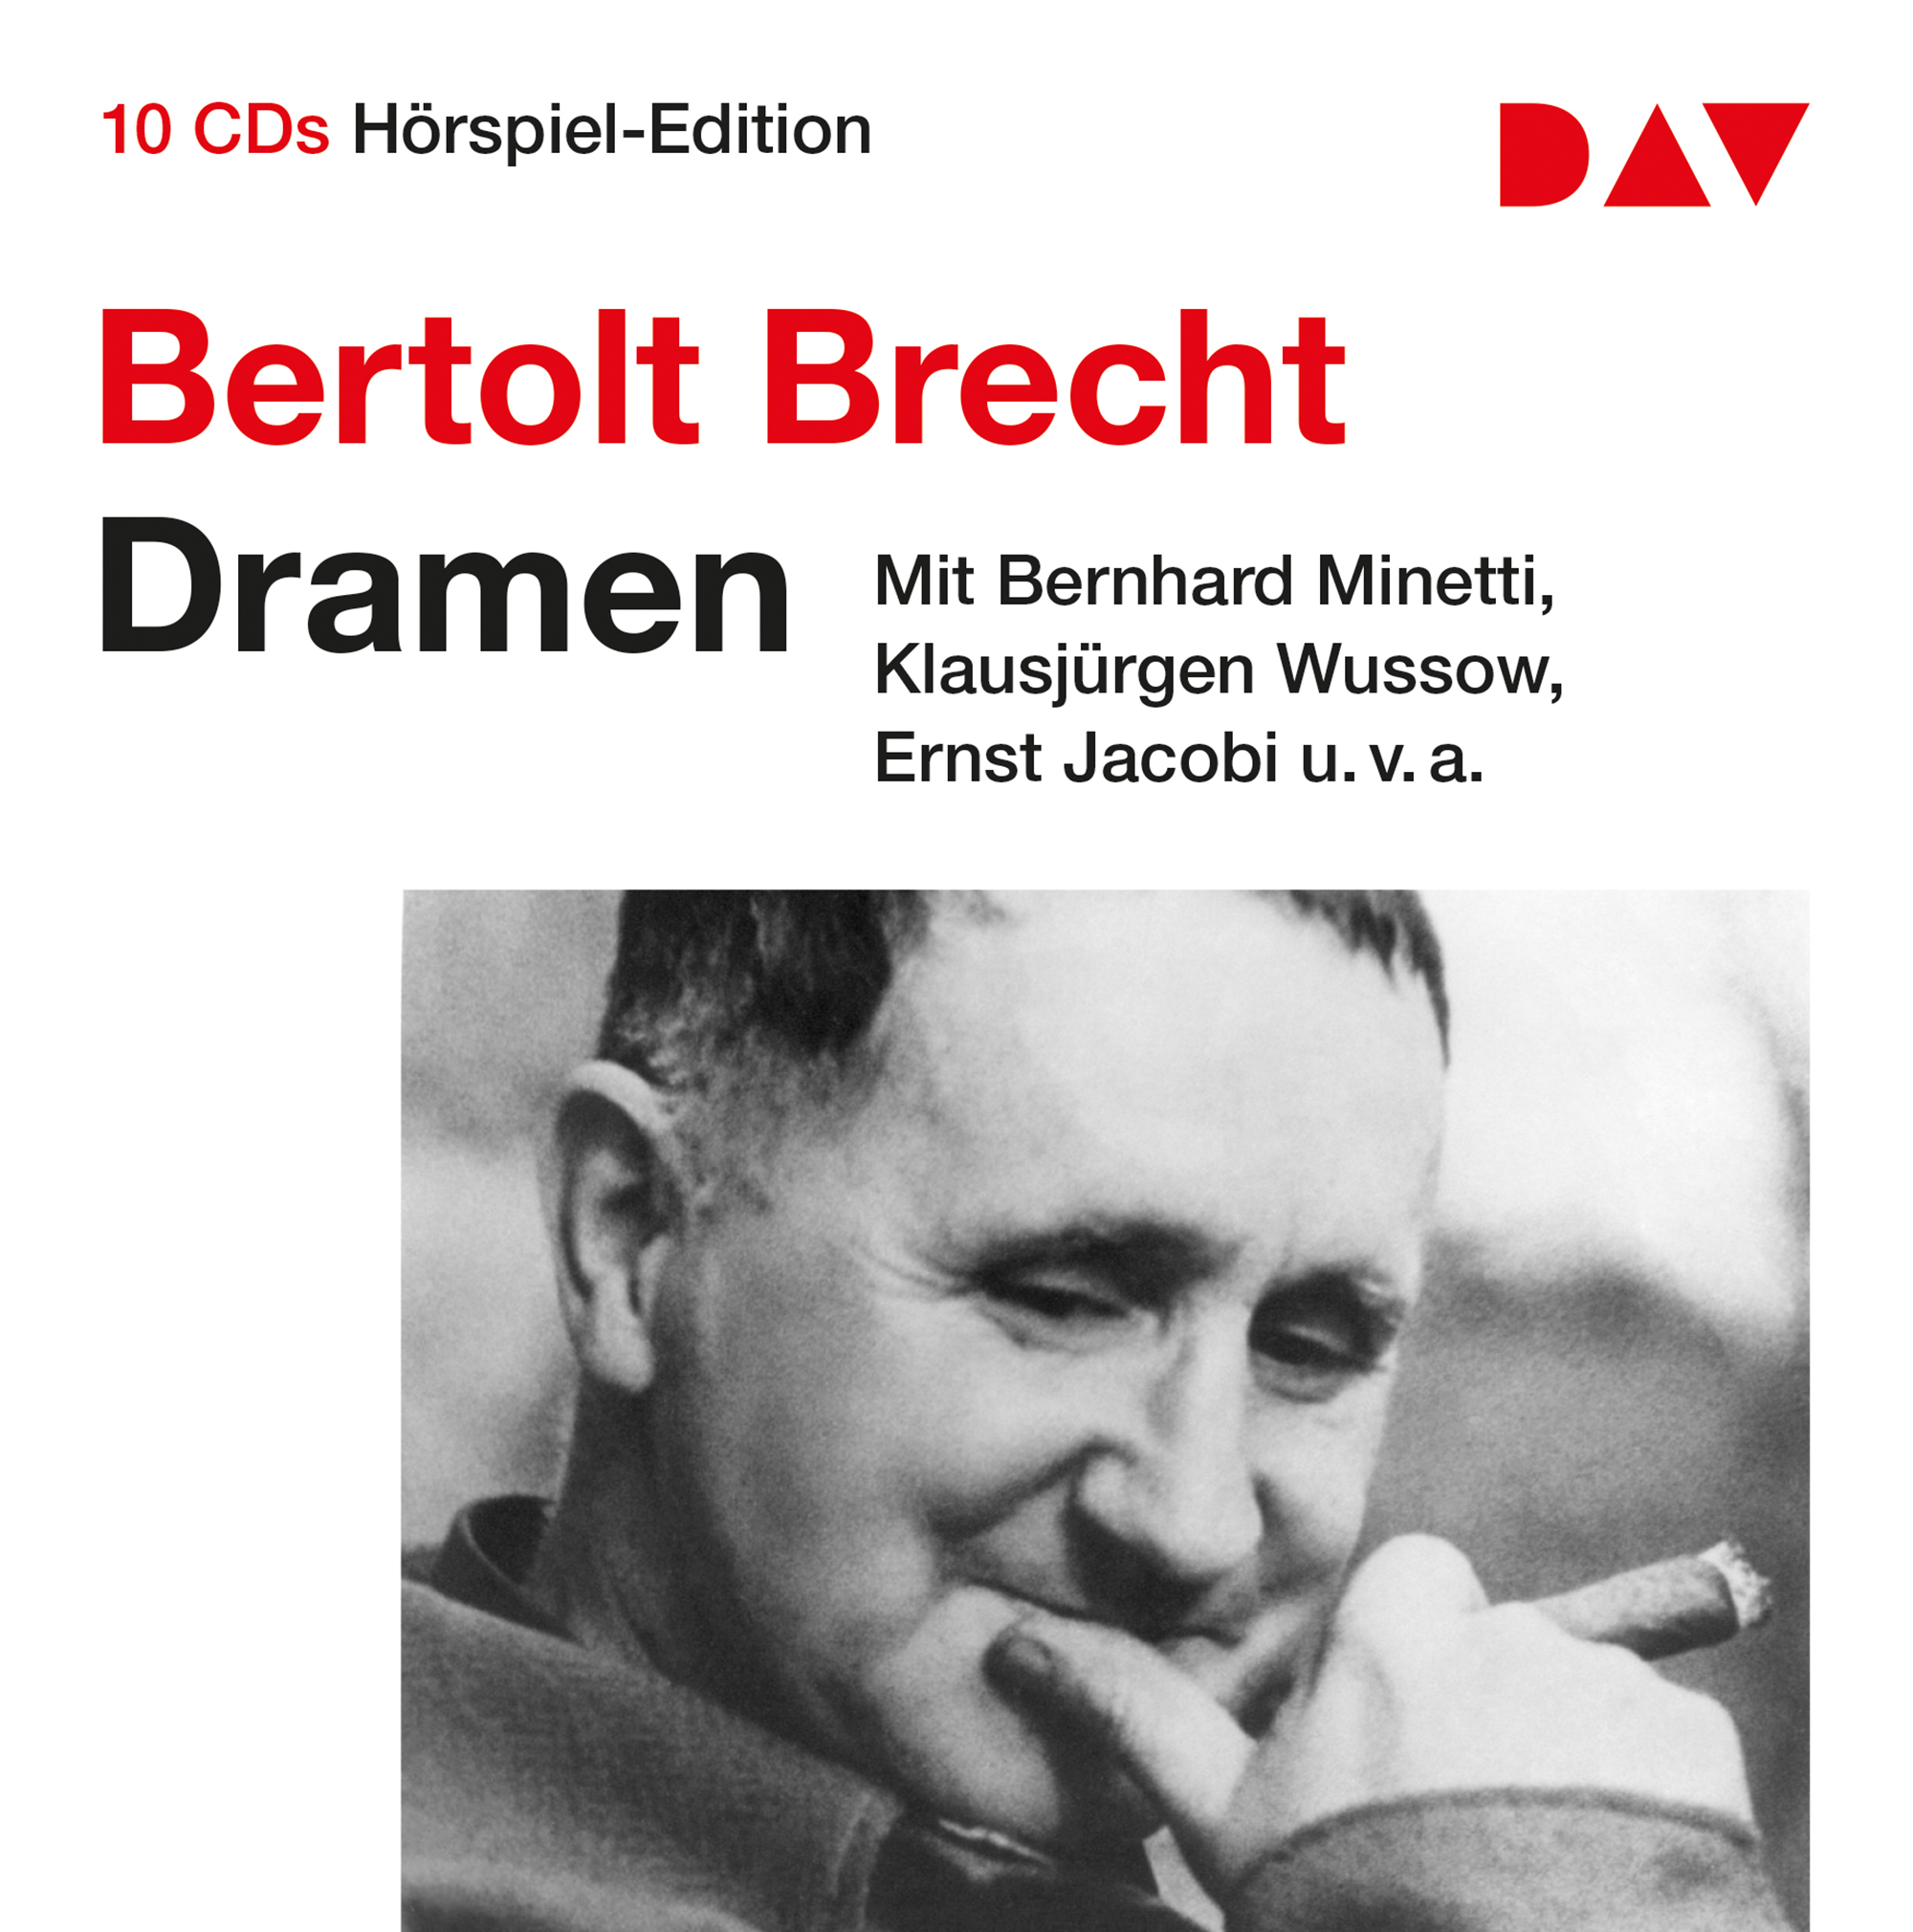 Brecht_Dramenbox_DigiBox_30mm_v4.indd